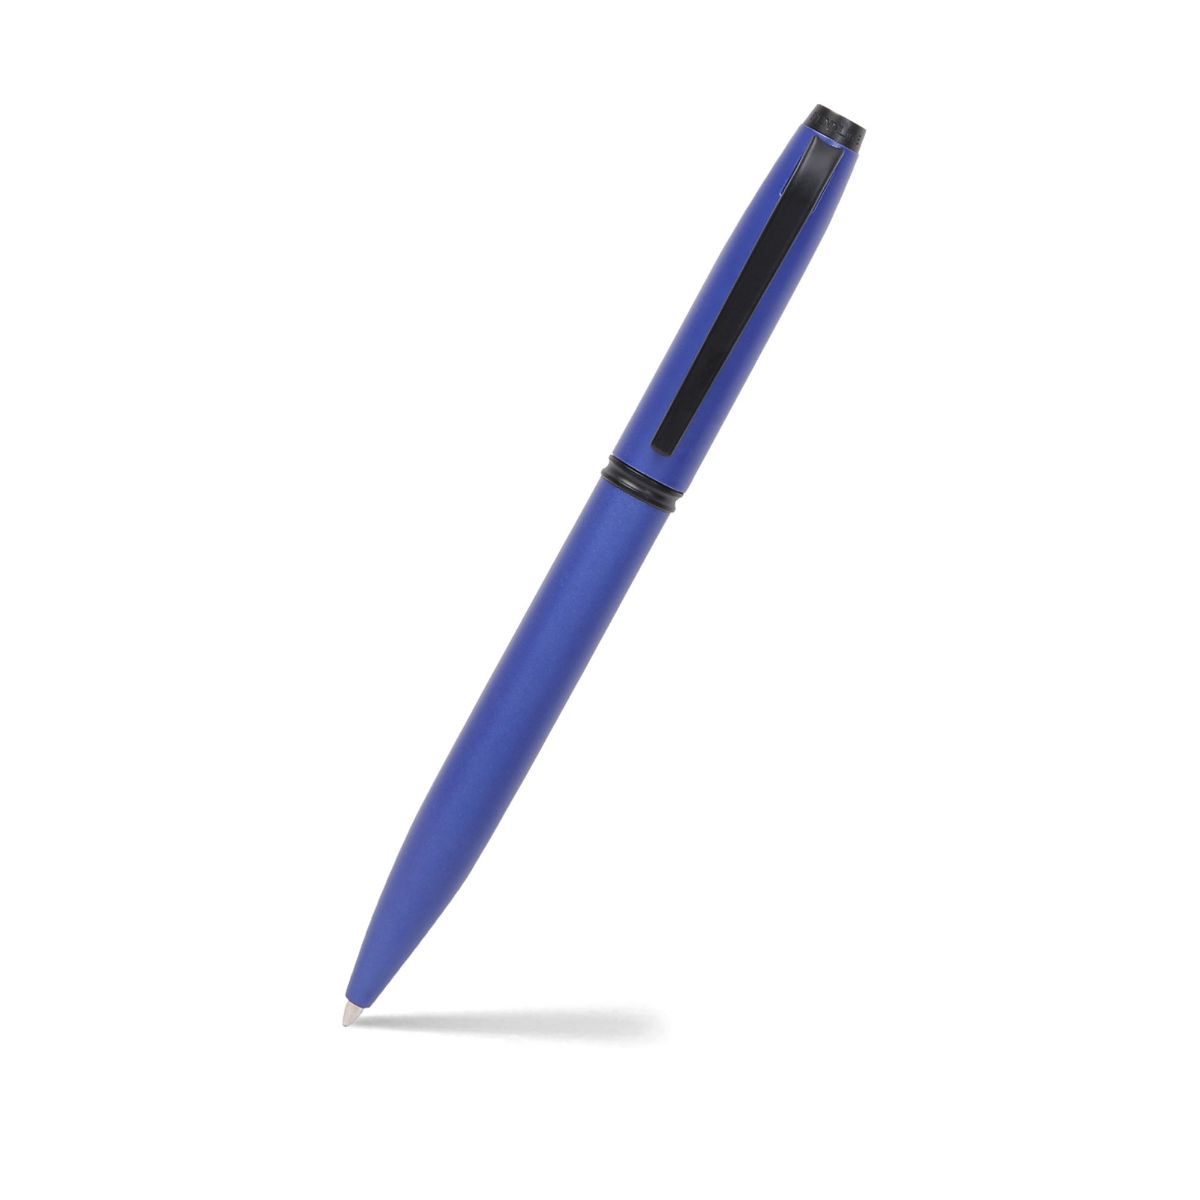 Pennline Atlas Brass Ballpoint Pen Matte Blue with Matte Black Trims (Pack of 3)